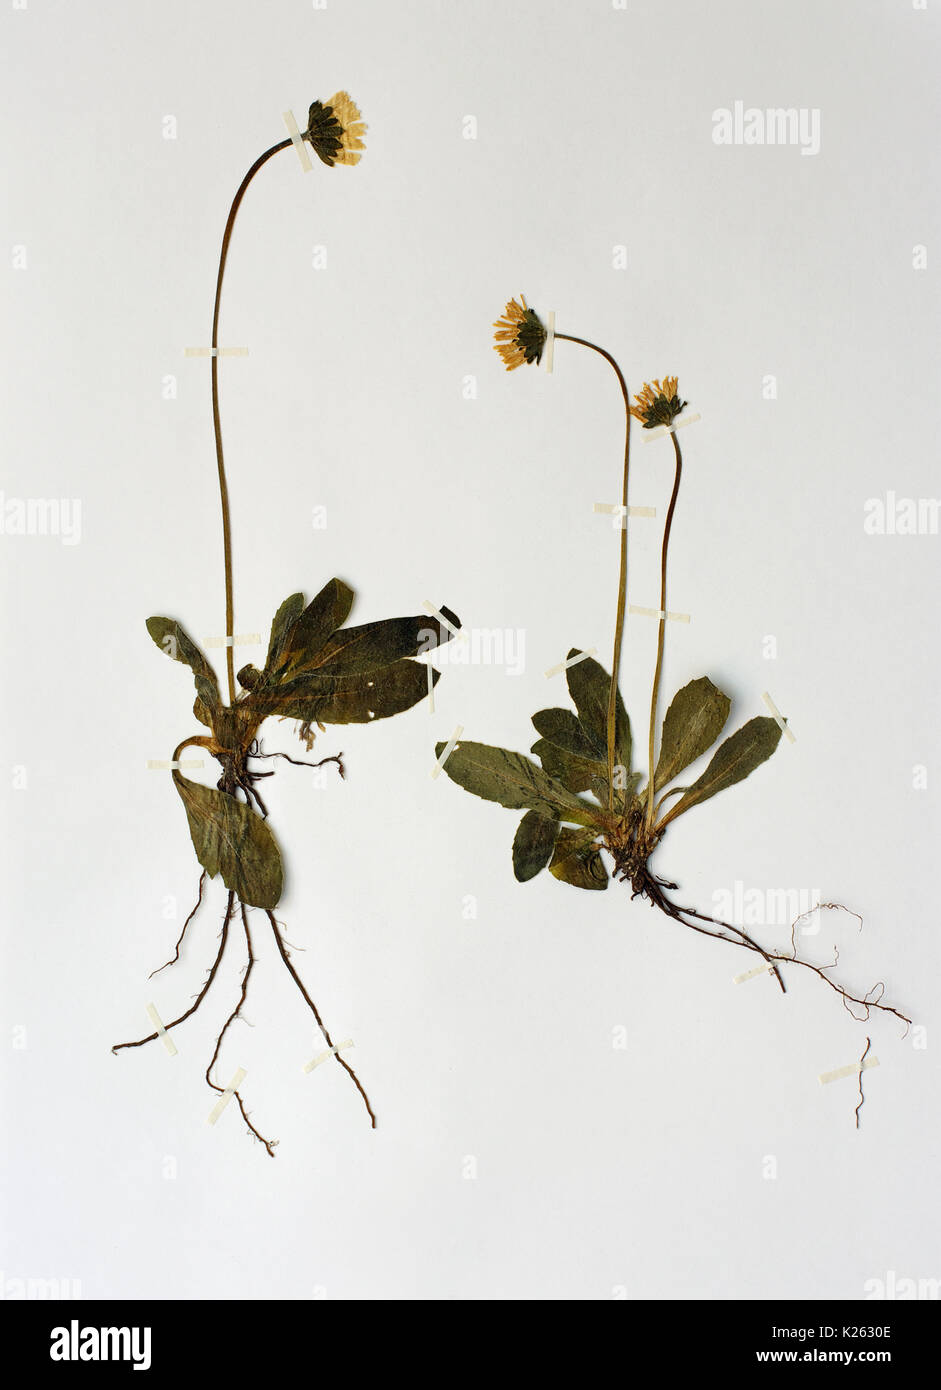 Una hoja de herbario con bellis sylvestris, al sur de MARGARITA MARGARITA, de madera o de las Asteraceae; crece en otoño ( hasta seis pulgadas) Foto de stock